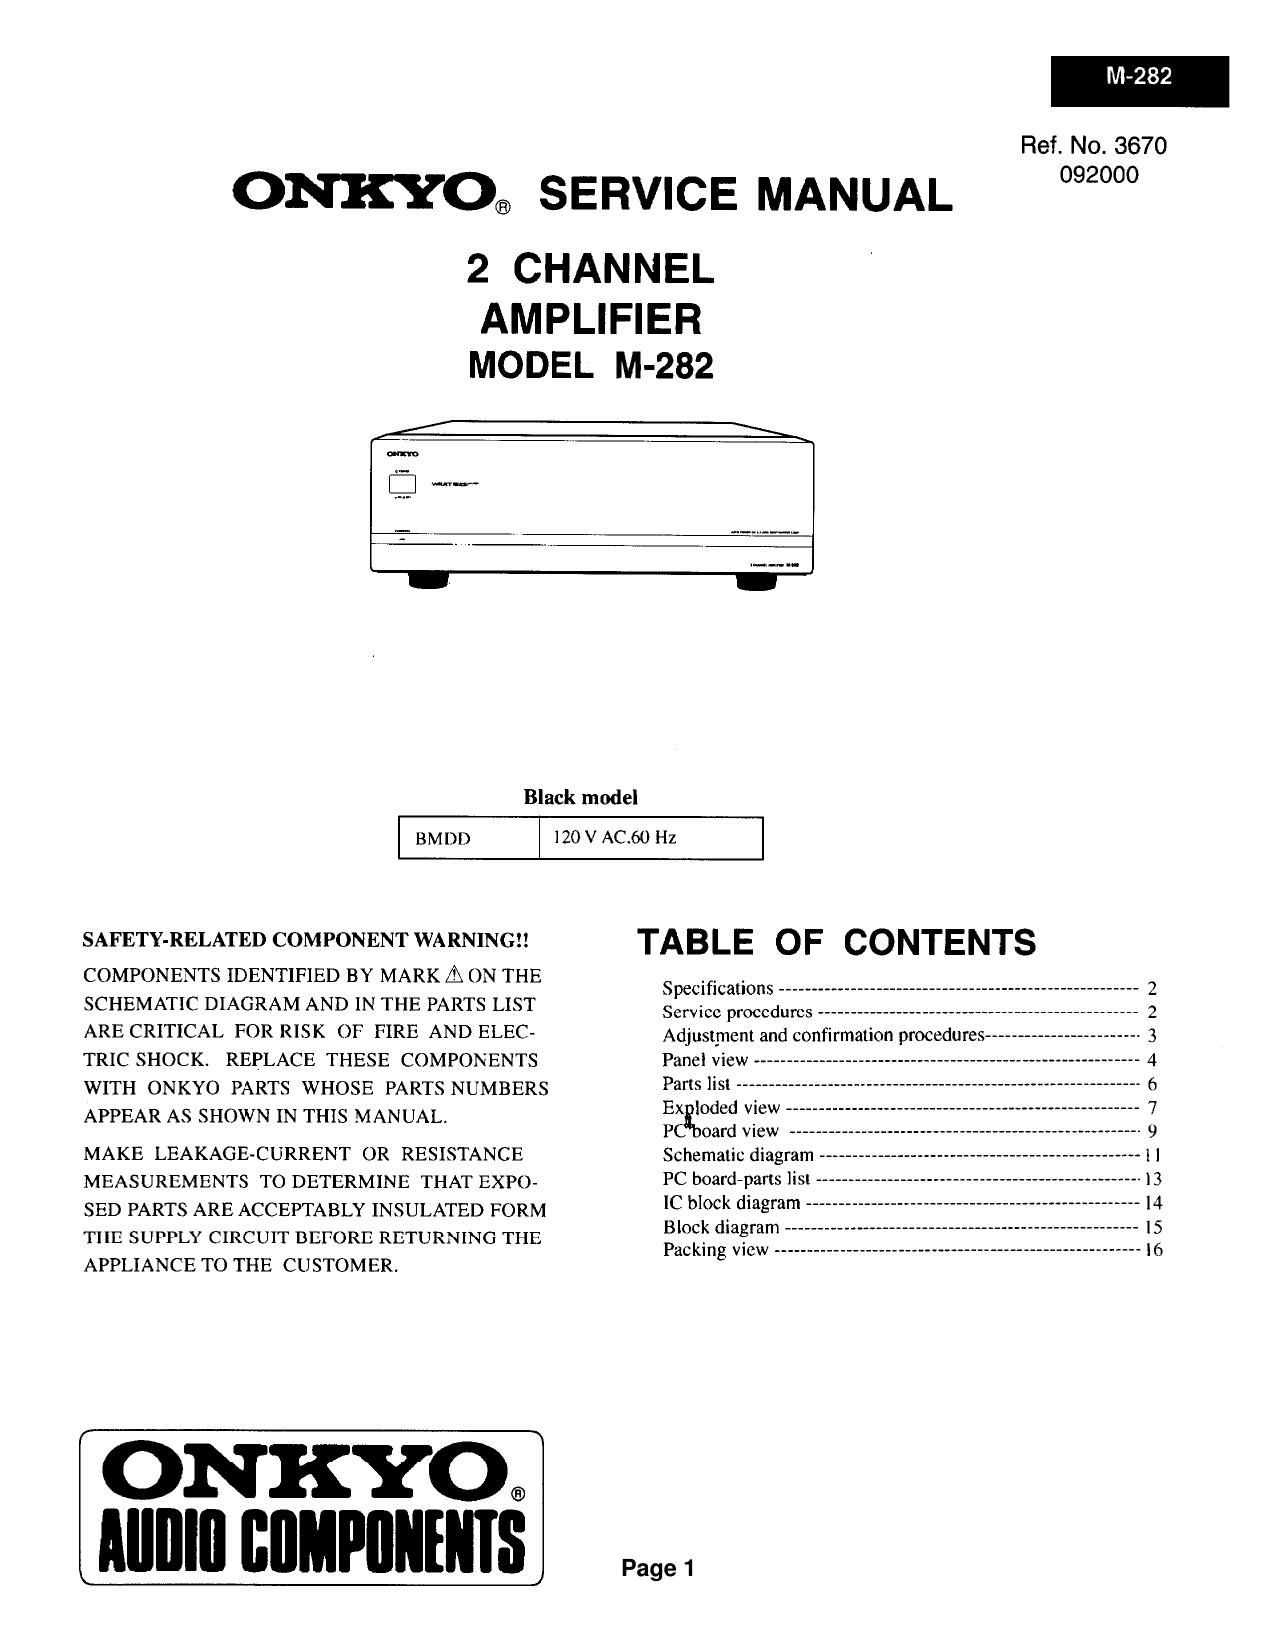 Onkyo M 282 Service Manual